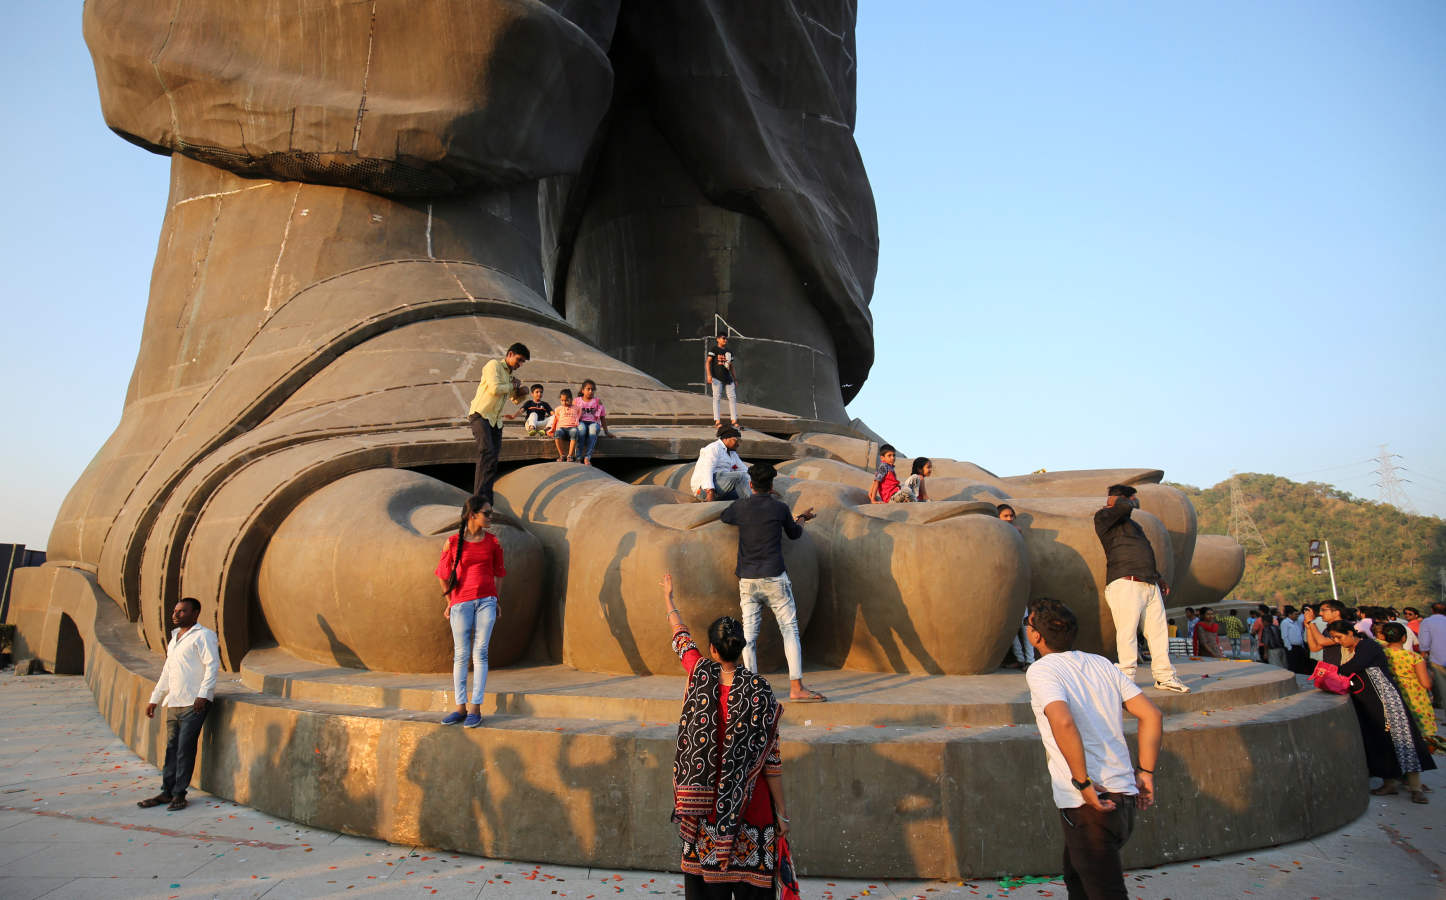 La obra, que es dos veces más alta que la Estatua de la Libertad neoyorquina, con el pedestal incluido, muestra a Sardar Vallabhbhai (1875-1950) vestido con un dhoti tradicional y un chal en los hombros. Narebdra Nidu inauguró en persona esa estatua de bronce, hormigón y acero, que mide 182 metros de alto y representa a Sardar Vallabhbhai Patel, el primer ministro del Interior de India y una de las figuras de la independencia del país. La estatua más alta del mundo era hasta el momento el Buda del Templo del Manantial, en el centro de China, que mide 128 metros sin pedestal, según el Libro Guiness de los Récords, frente a los 157 de la escultura india sin soporte